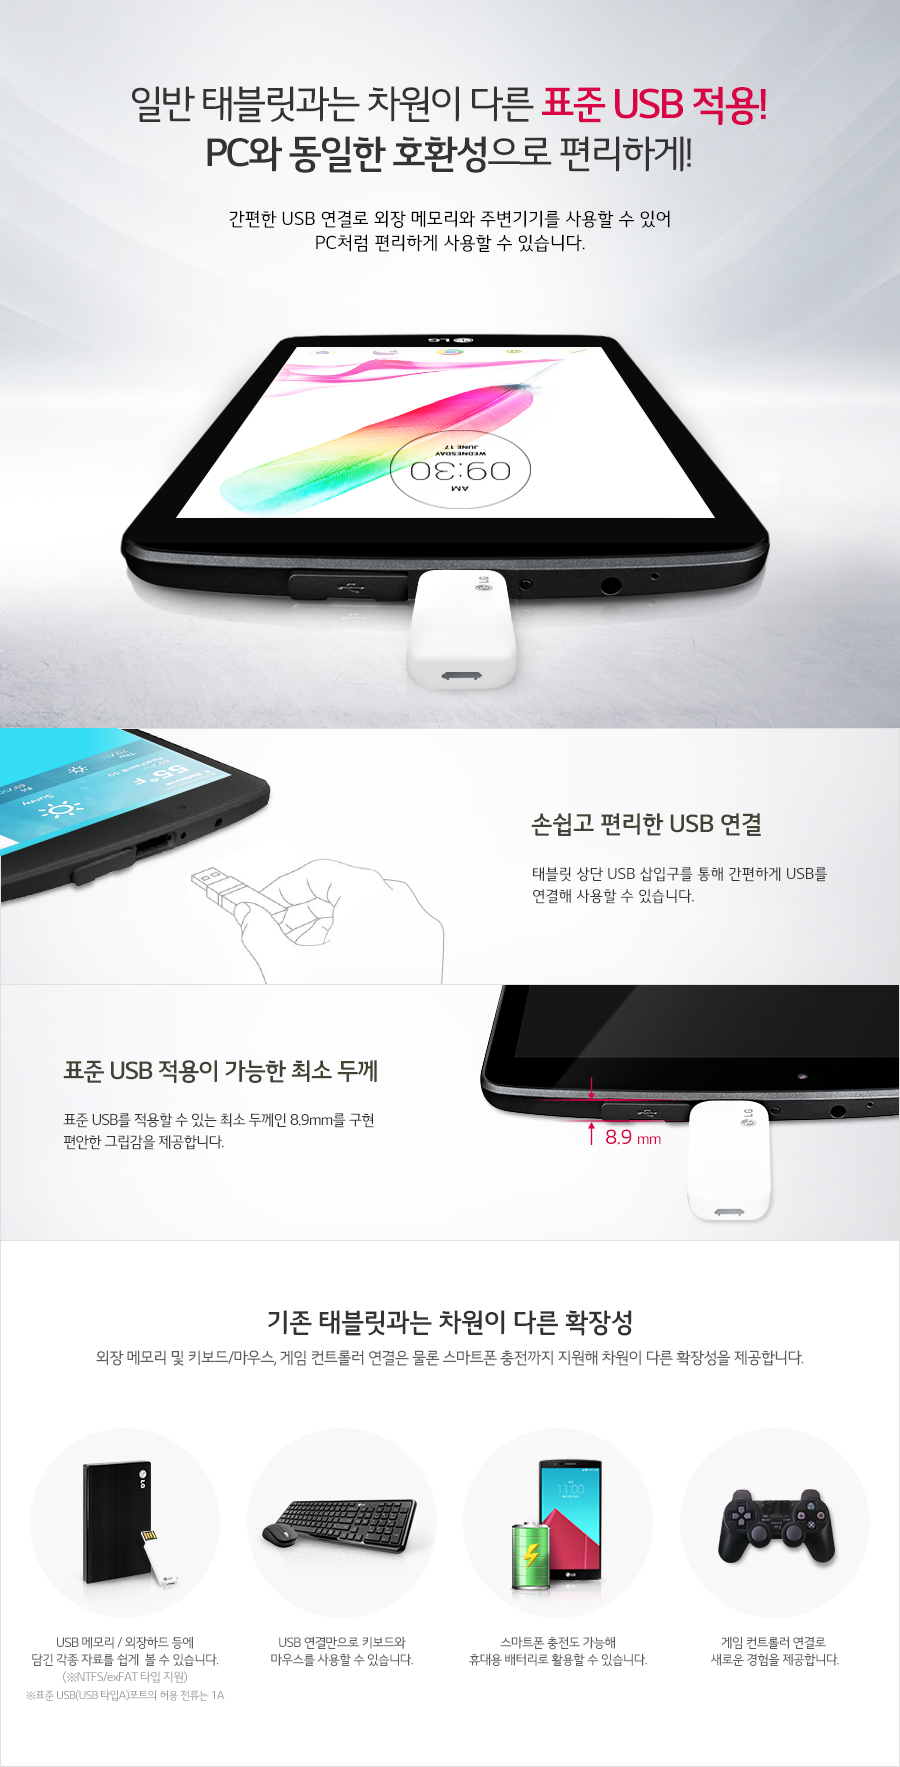 Gold USB Port Cover LG G Pad X 8.0 V521 T-Mobile Tablet OEM Part #379 